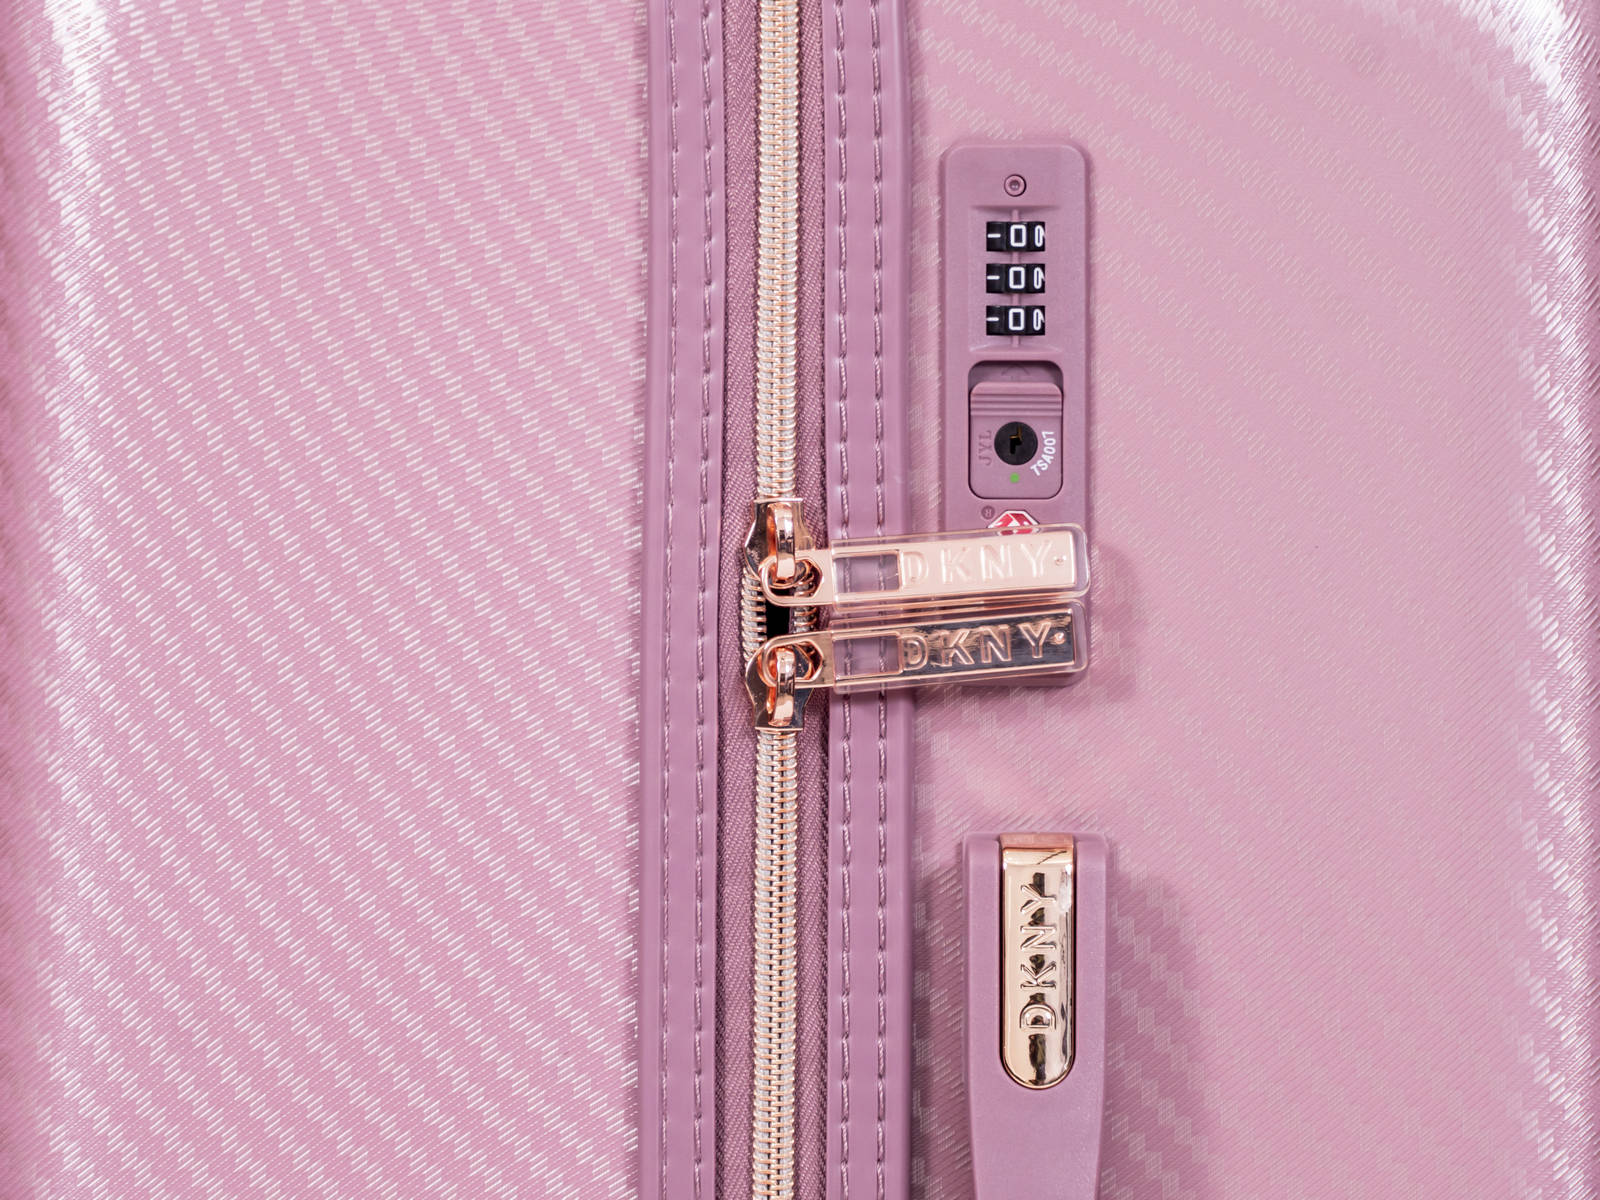 ✮✮בלעדי בישראל✮✮ מזוודה בינונית 24" אופנתית מבית מעצבת העל Donna Karan DKNY דגם ALLURE 2.0